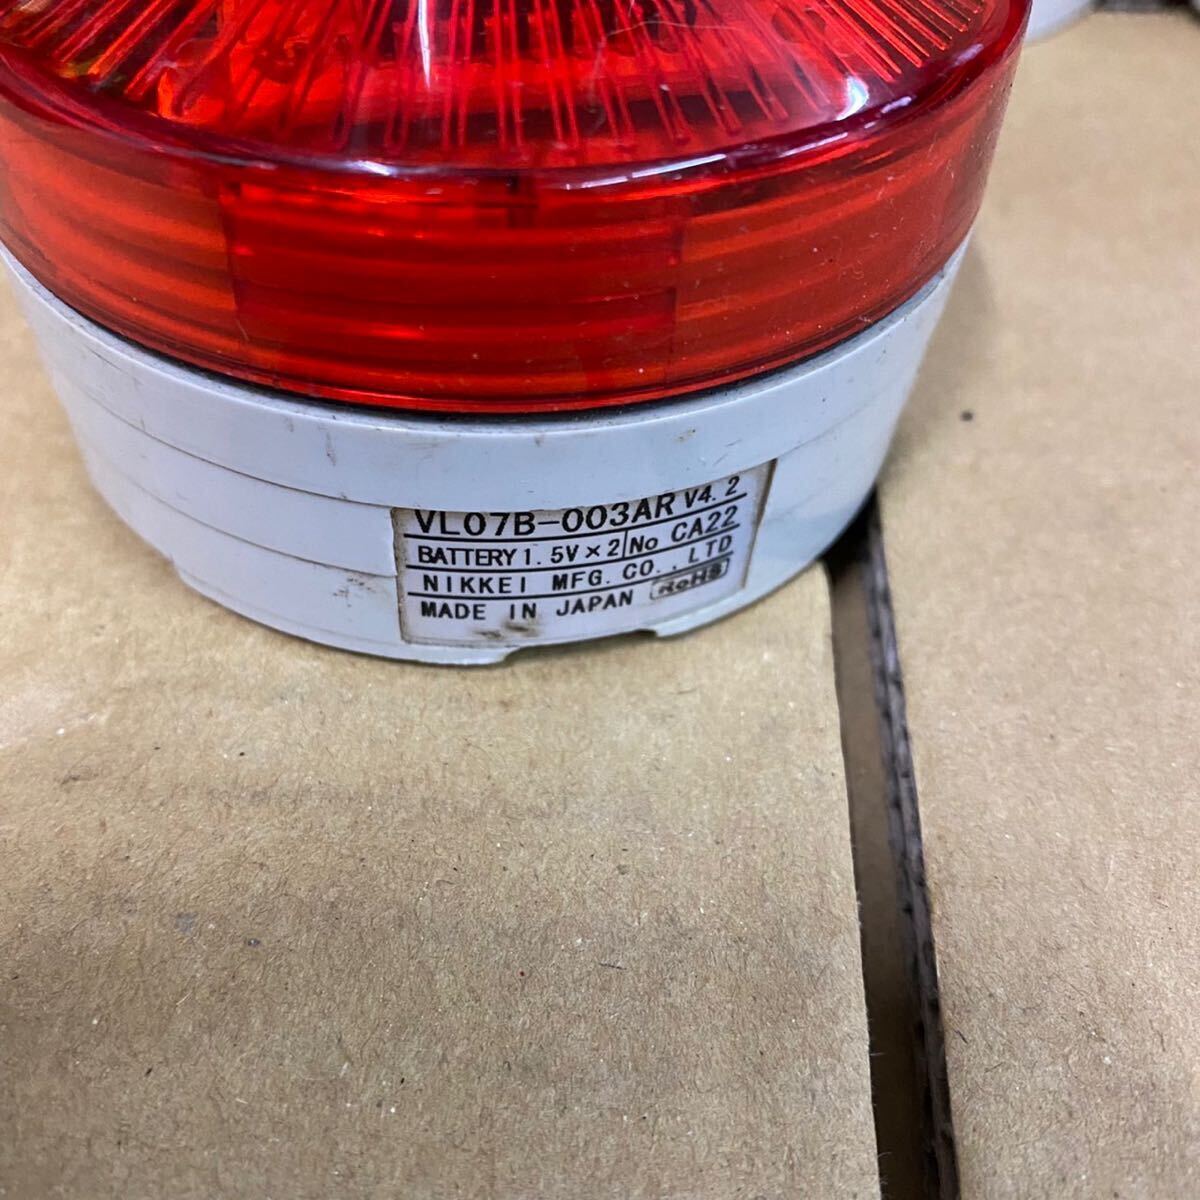 NIKKEI тип аккумулятора LED предупредительный сигнал указатель поворота Nico UFO VL07B type красный 10 шт. комплект ②